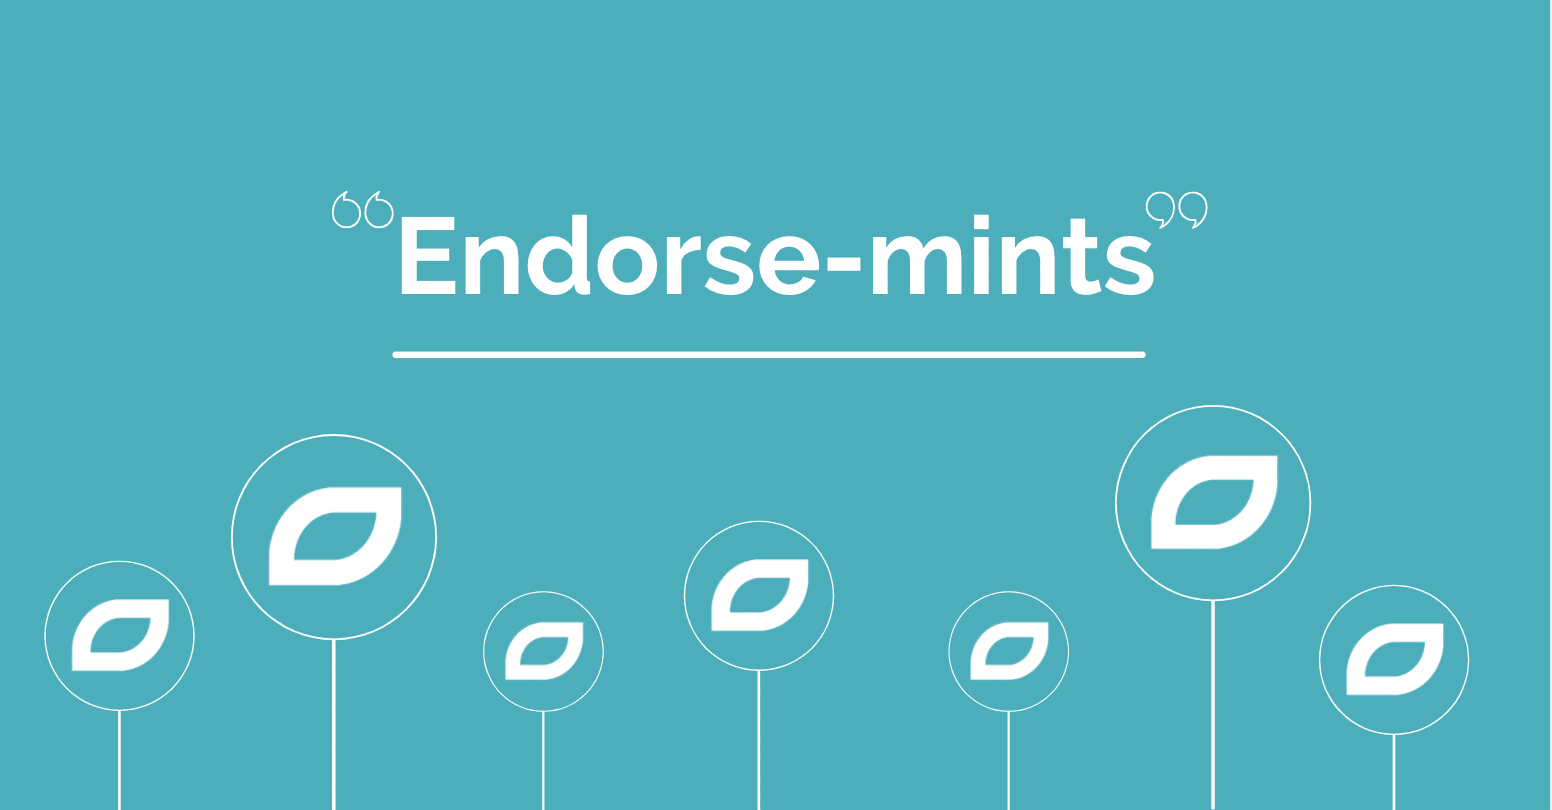 Endorse-mints